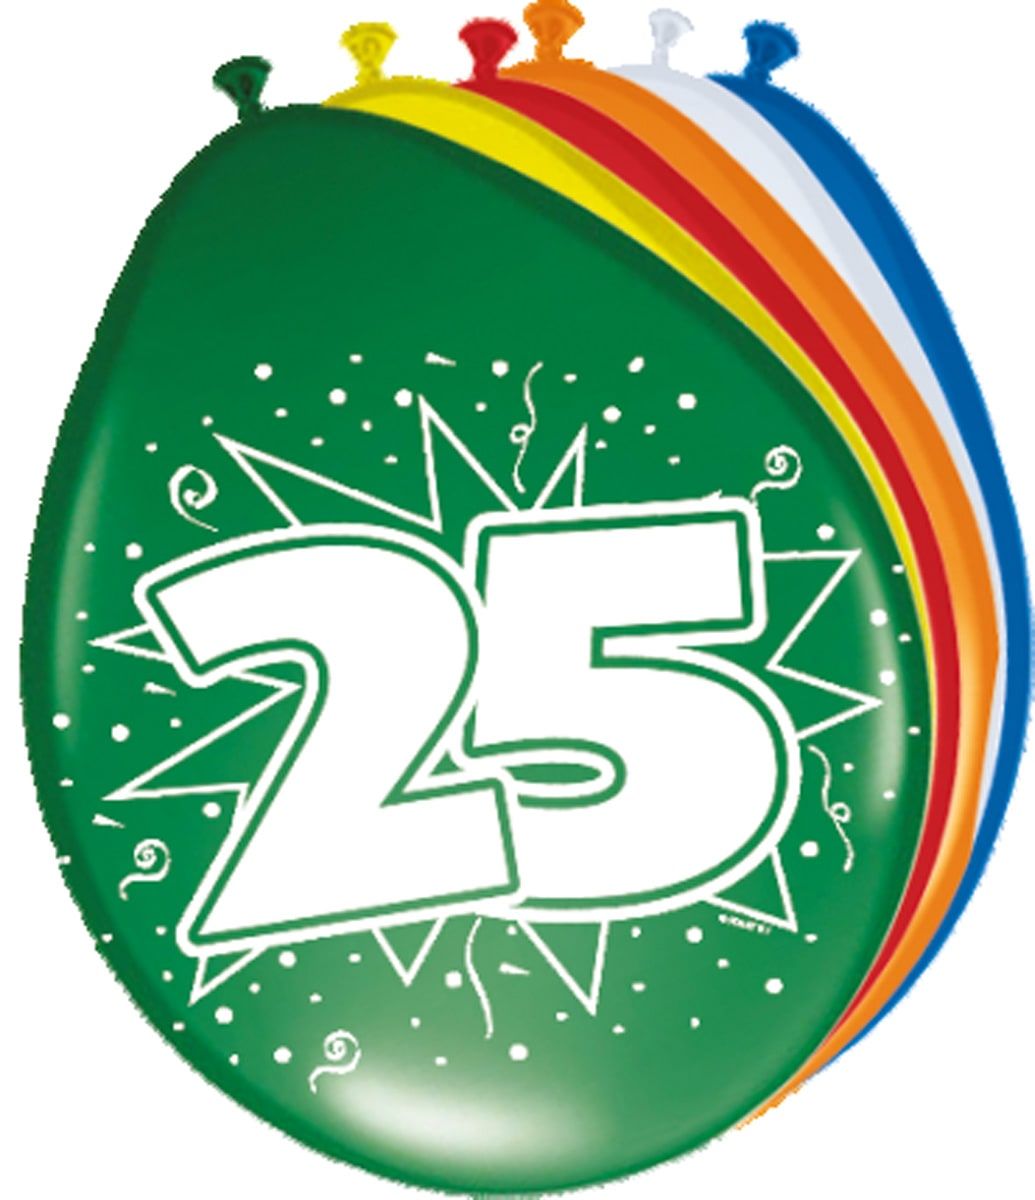 Verjaardag 25 jaar ballonnen 8 stuks